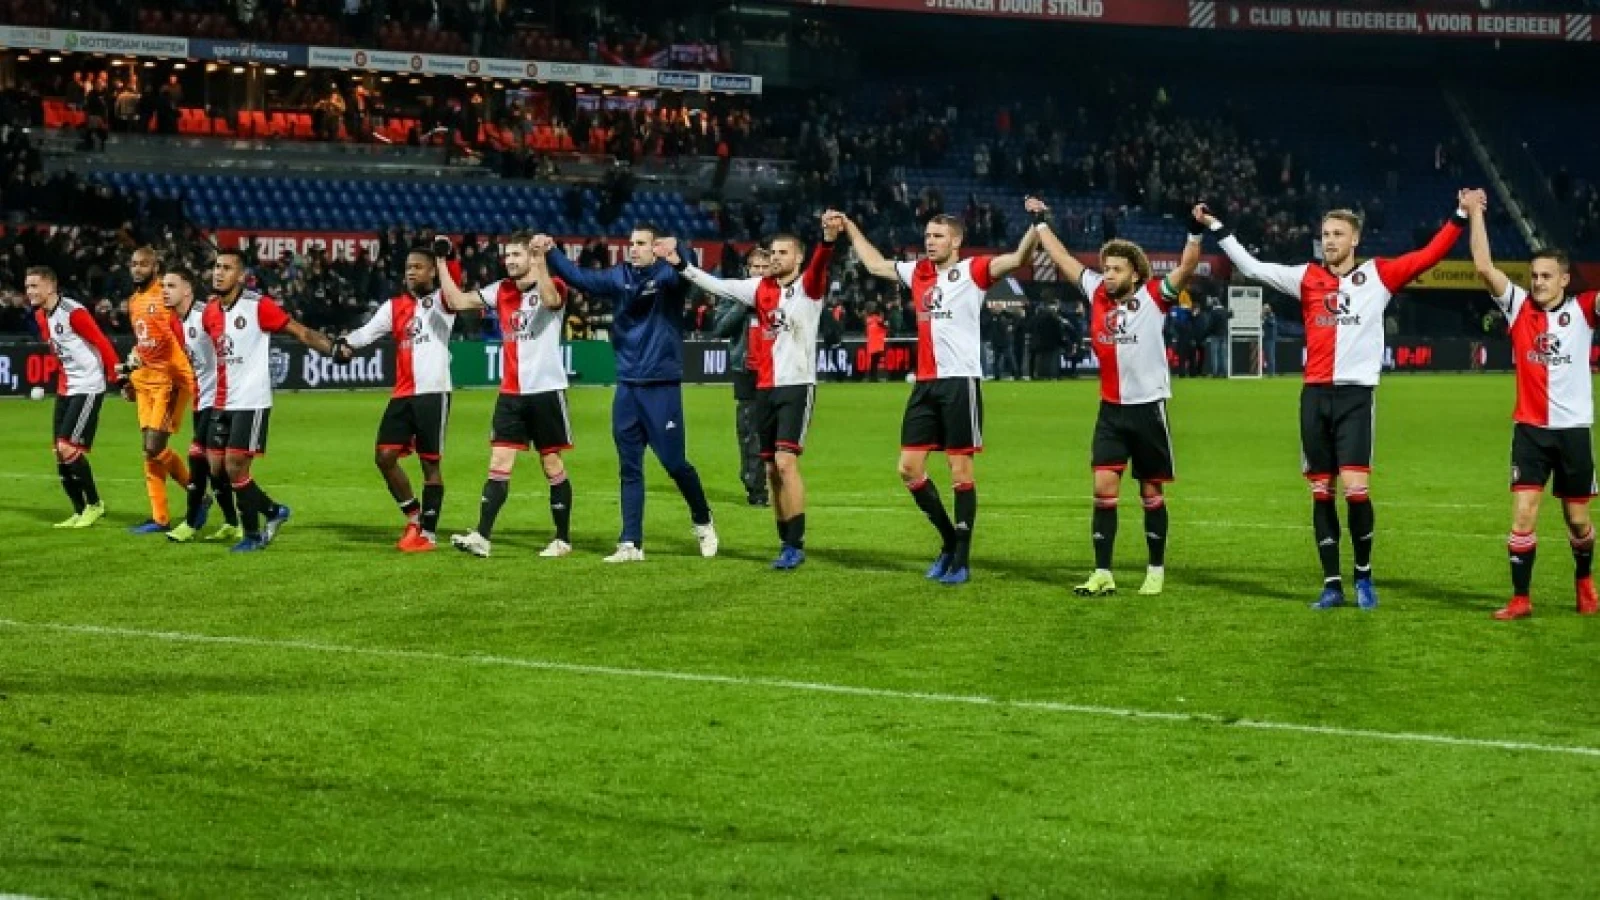 OPSTELLING | Feyenoord moet het vandaag doen zonder sterkhouder